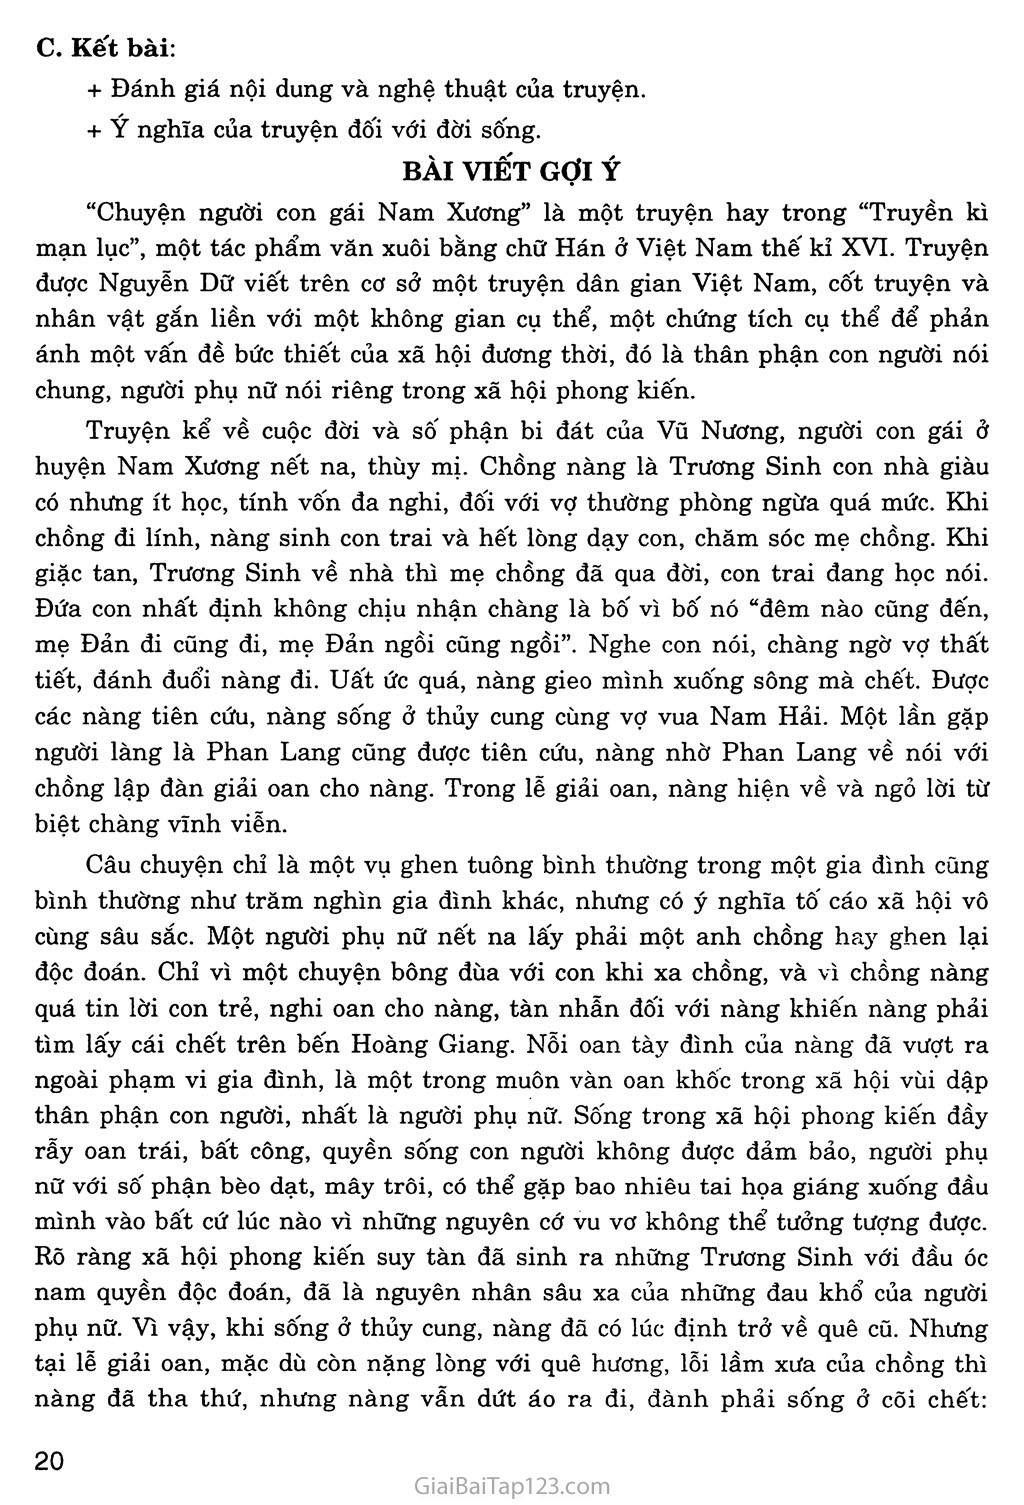 Chuyện người con gái Nam Xương (trích Truyền kì mạn lục) trang 8